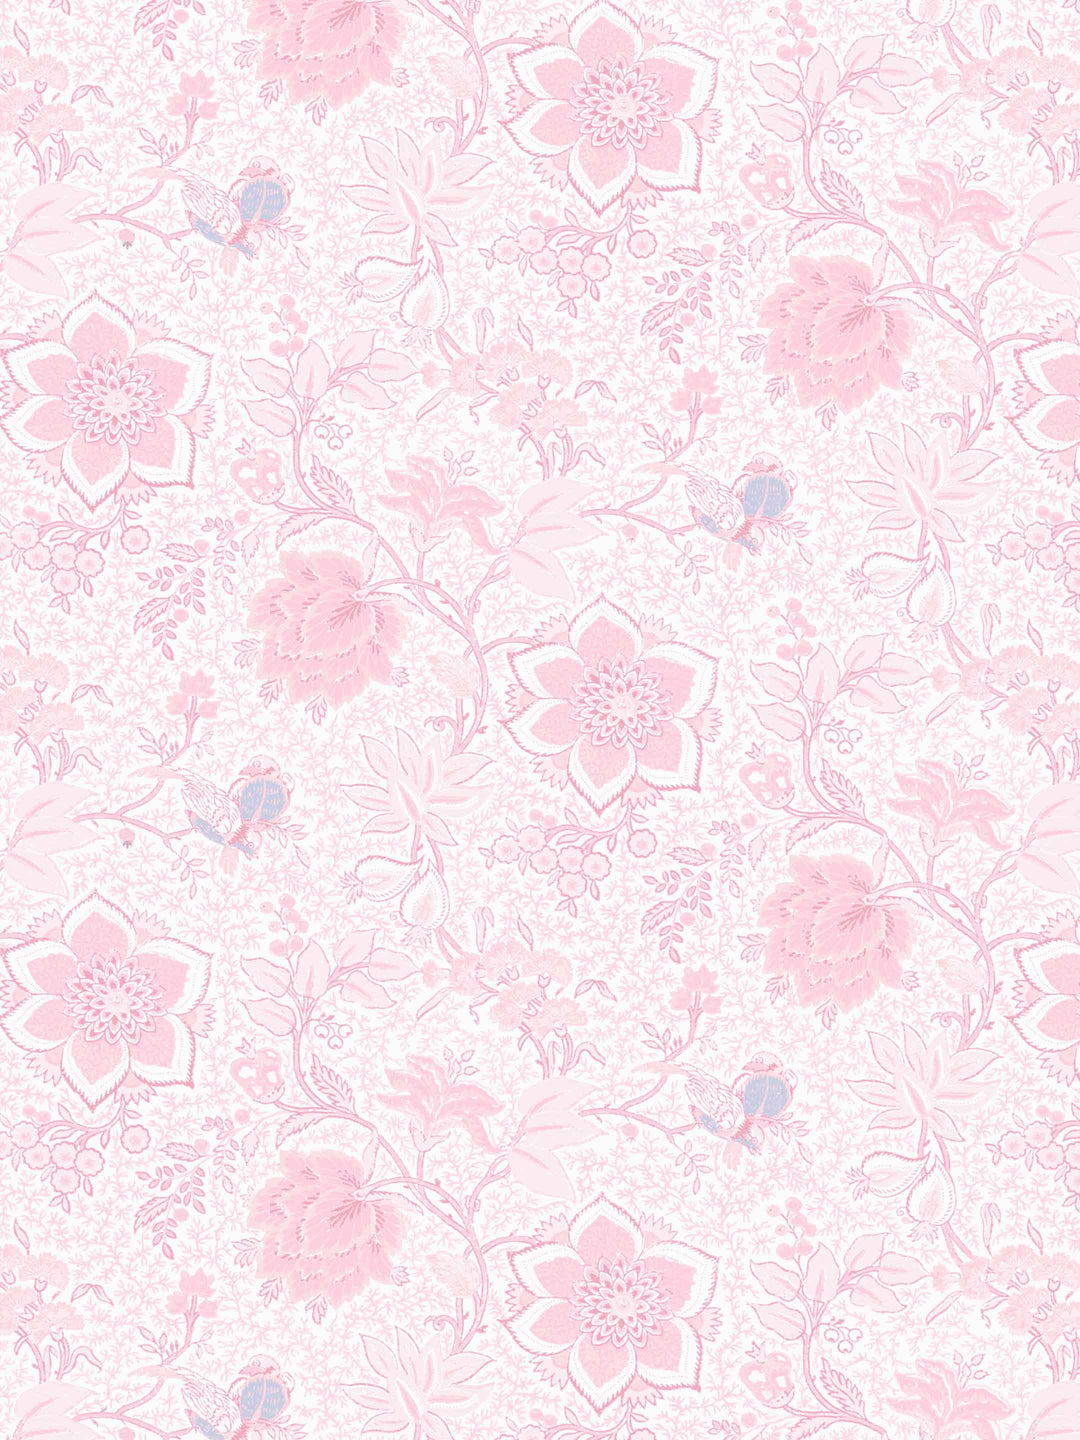 Folie Flora Floral Wallpaper - Pink